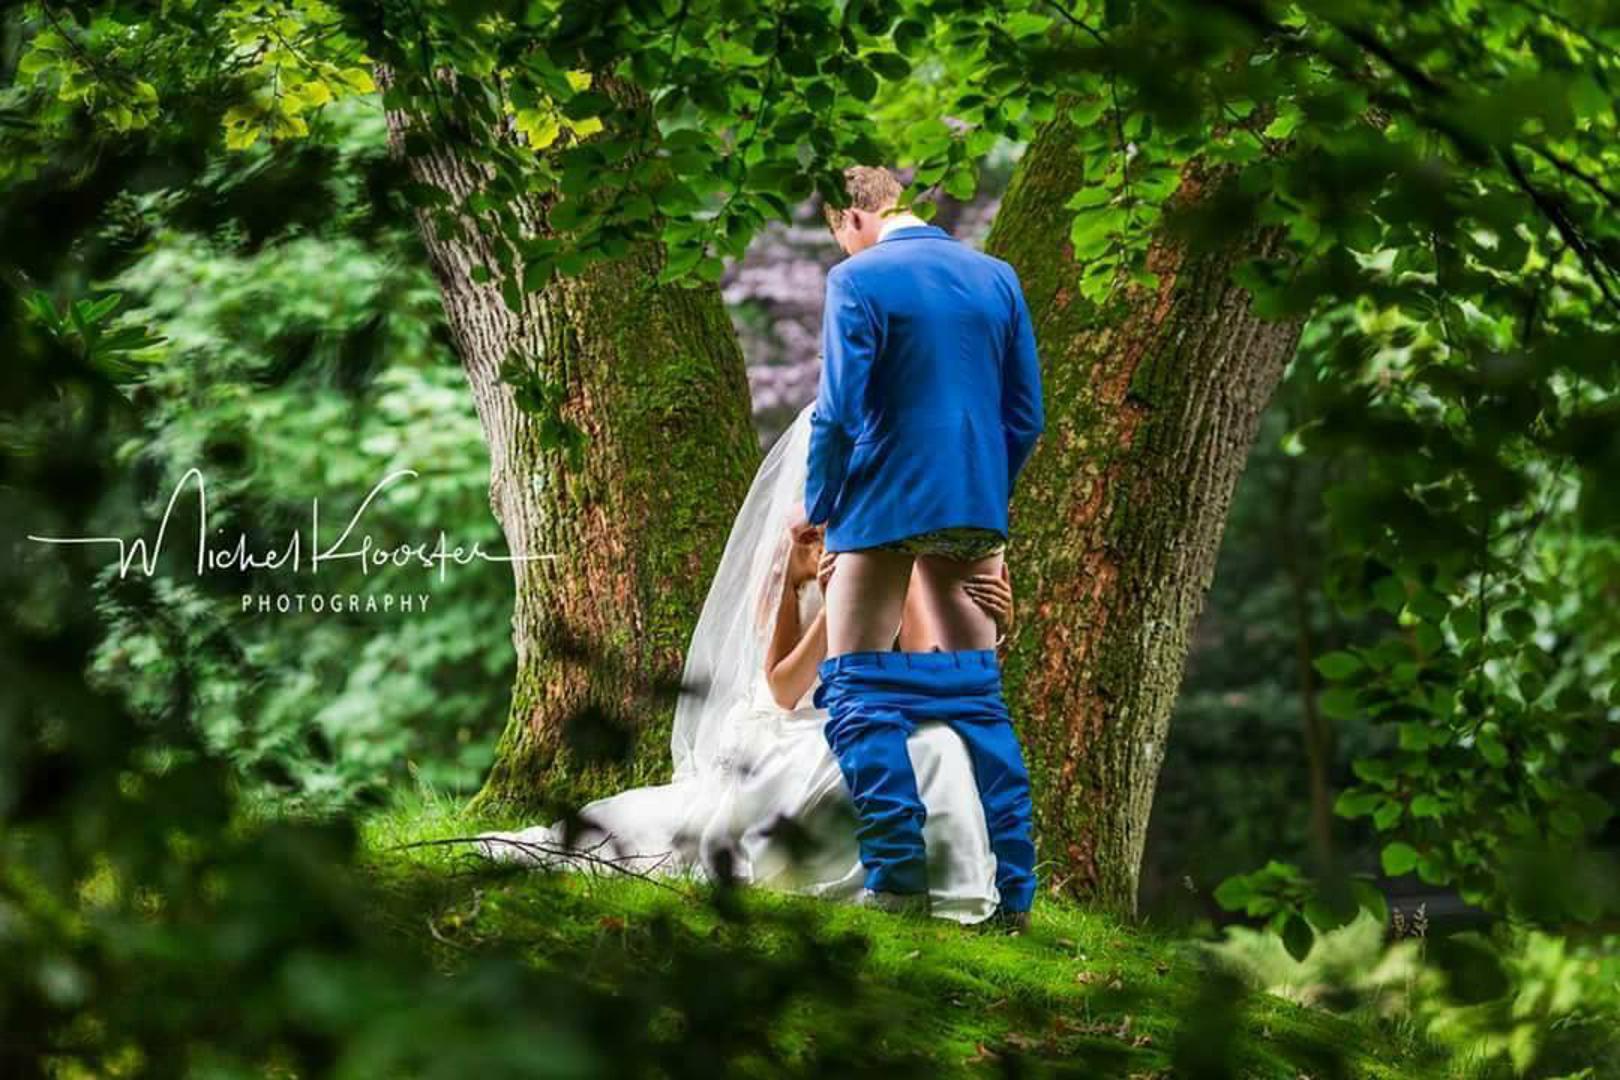 Jedan novopečeni bračni par iz Nizozemske odlučio se na nesvakidašnje fotografije. Fotograf Michel Klooster par je snimio u šumi među drvećem, ali u pozi kakvu još – usudili bismo se reći – nikad nismo vidjeli. Fotka je postala golemi hit na društvenim mrežama.